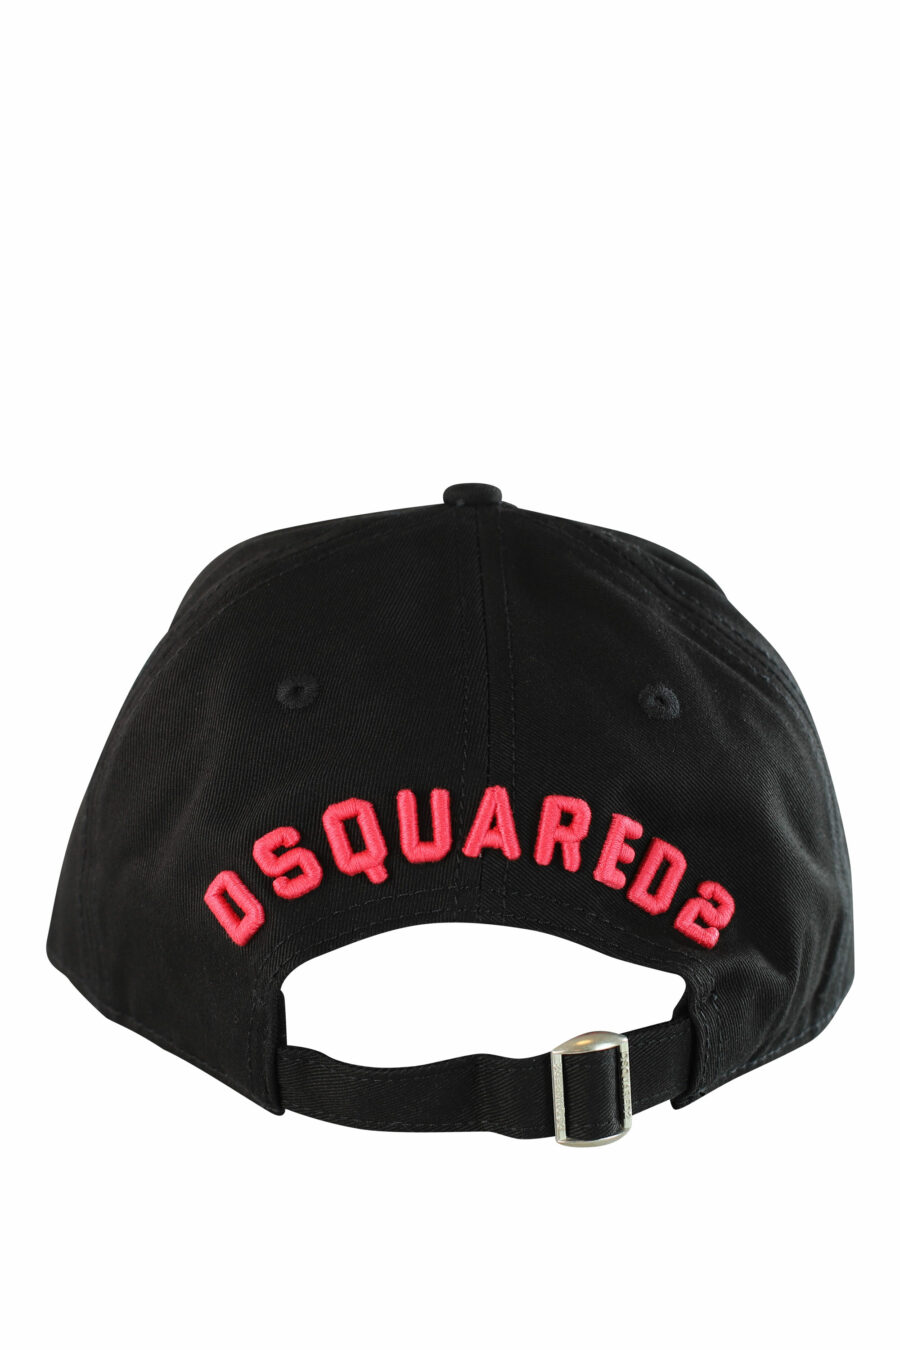 Gorra negra con logo "icon" fucsia bordado - IMG 1214